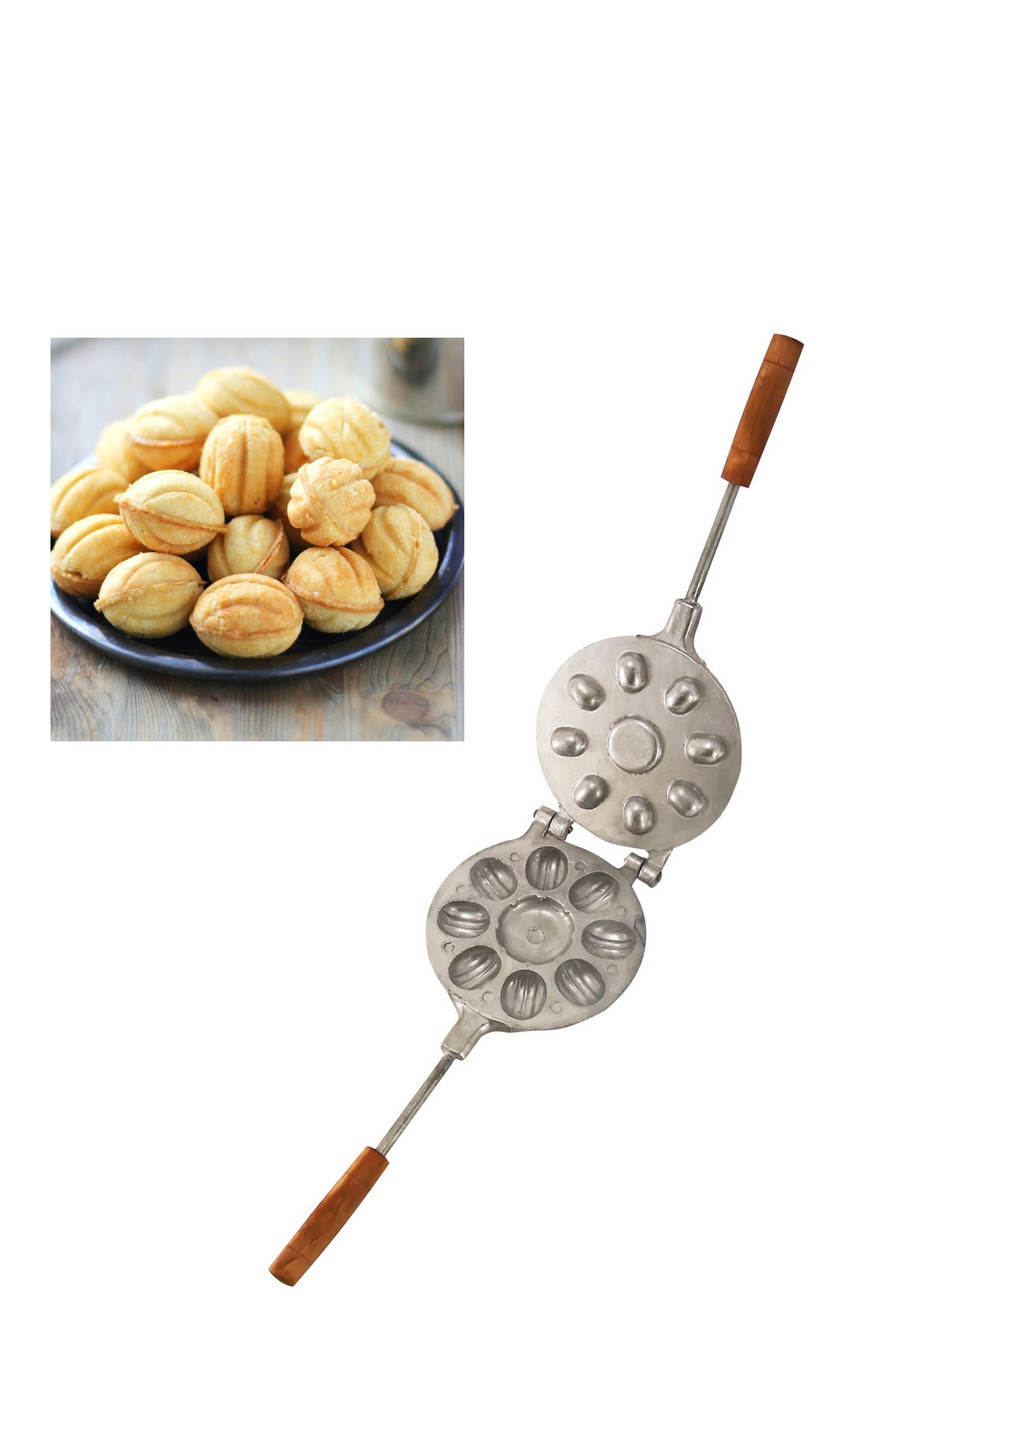 Орешница форма для выпечки крупных орешков со сгущенкой (8 орехов) + цветок ХЕАЗ (259035821)